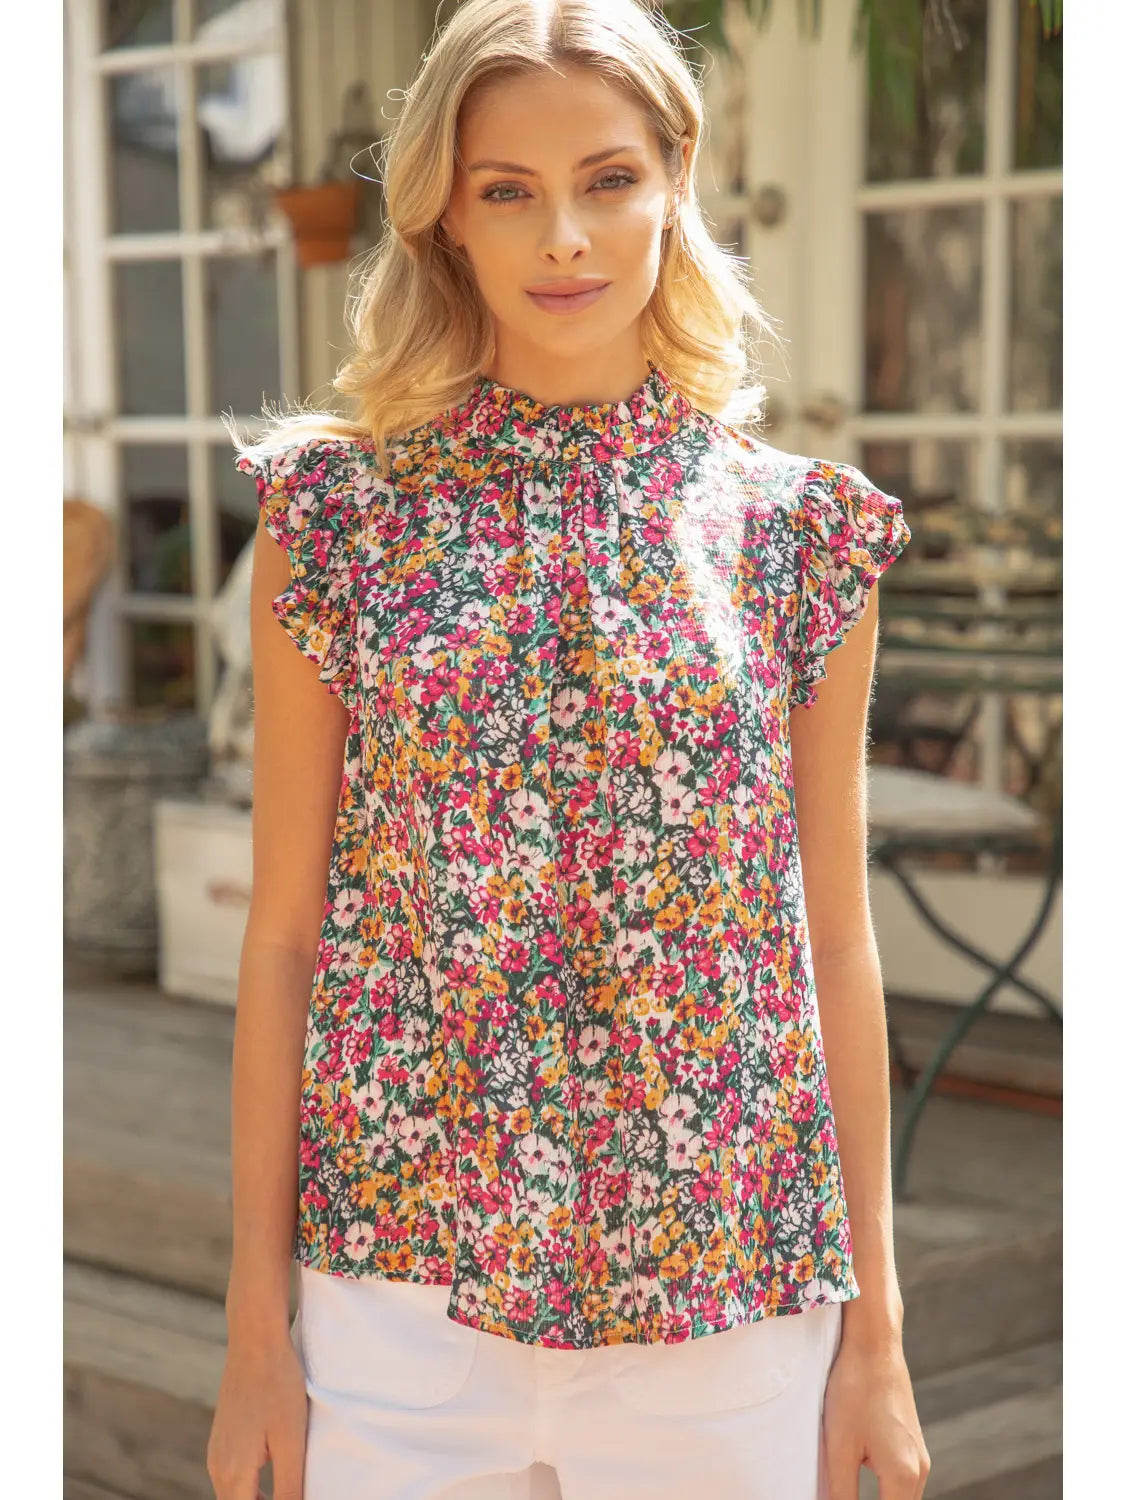 Shirts Women’s Venessa Sleeveless Ruffle Print Top 31652-2